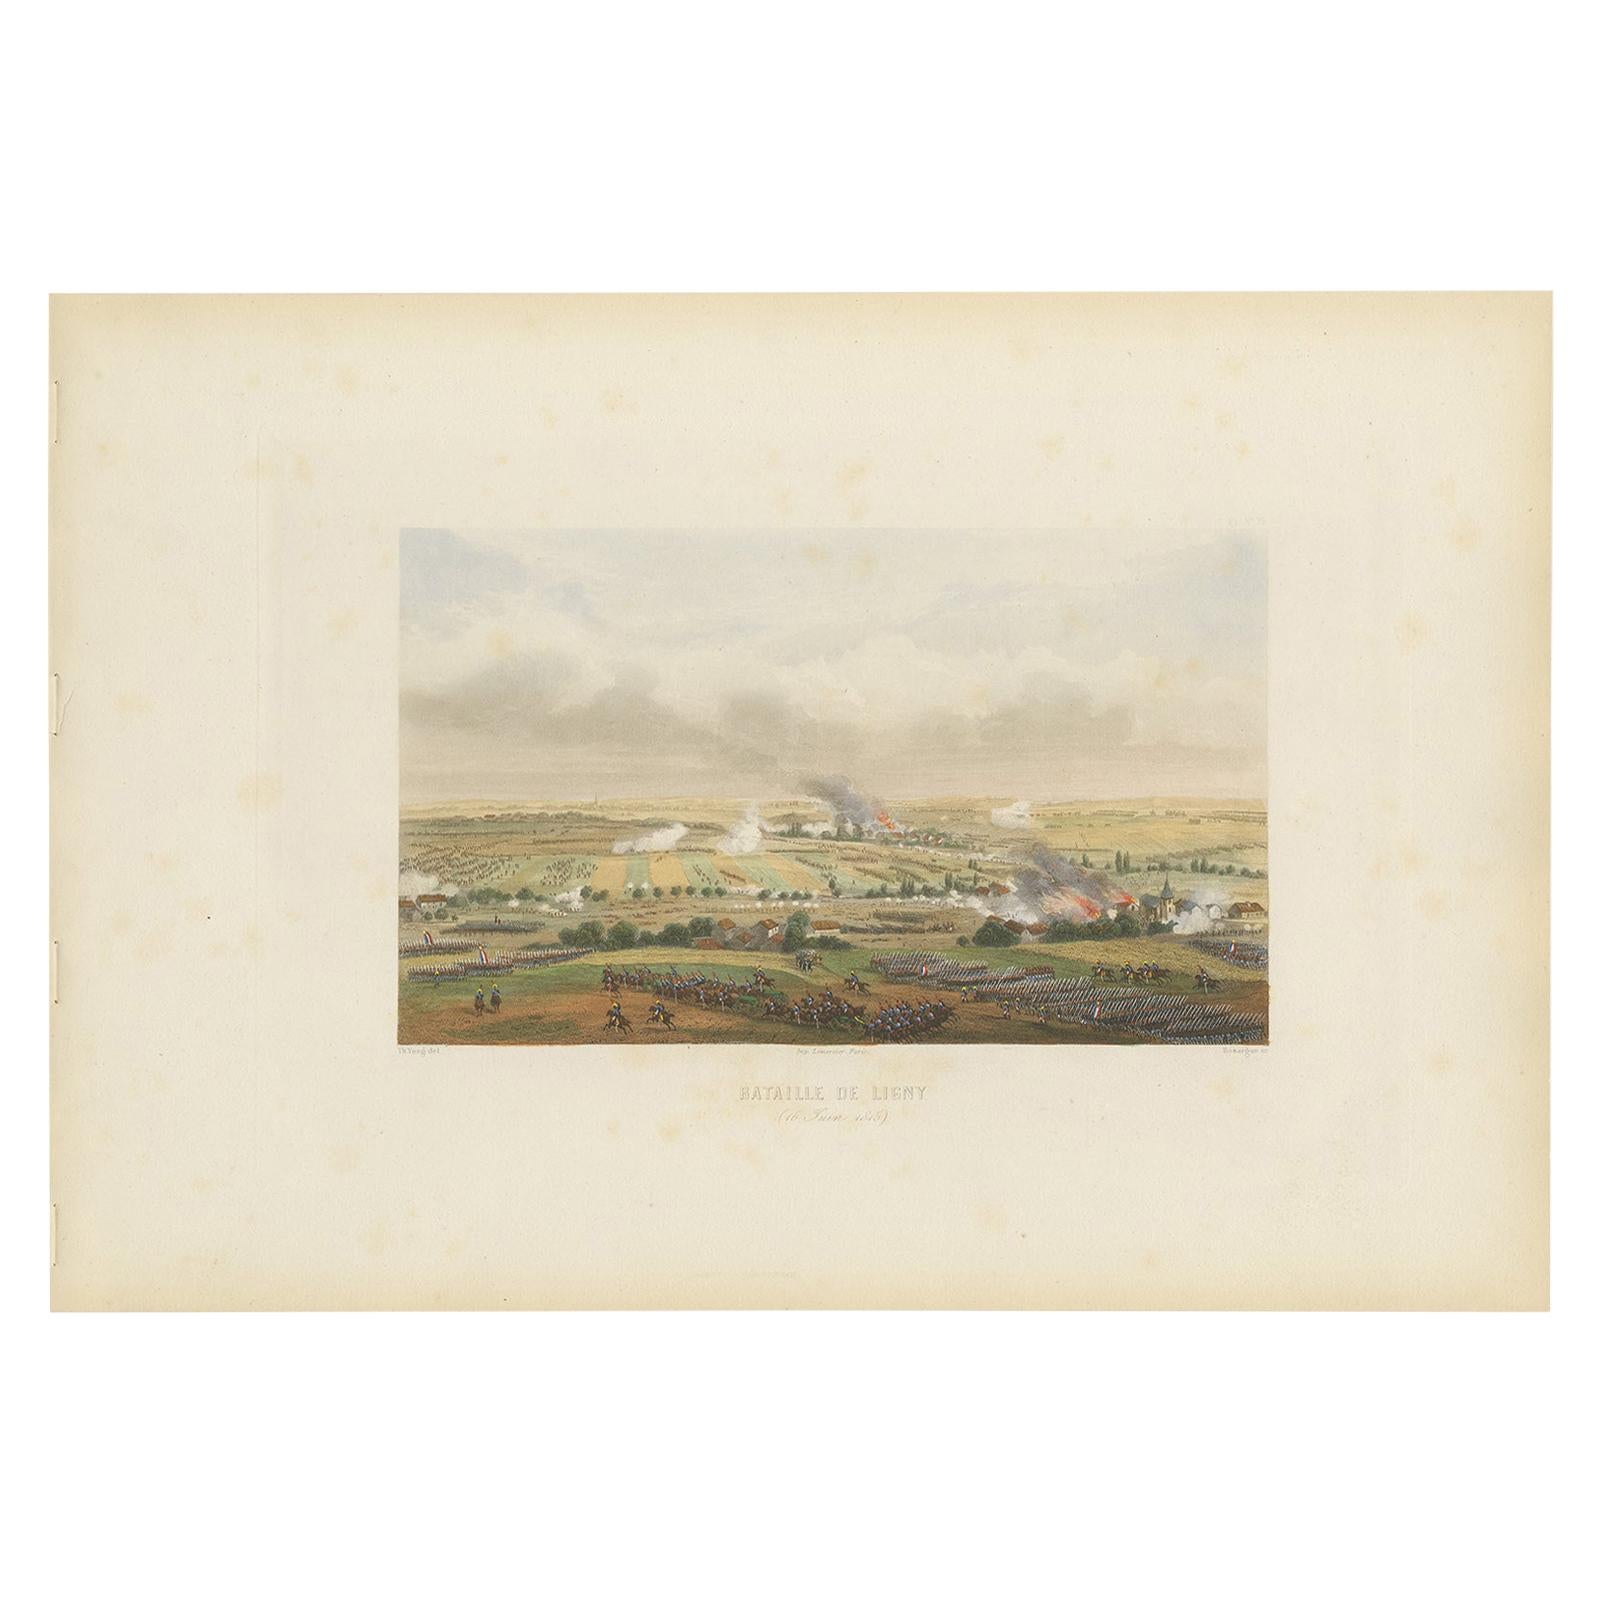 Impression ancienne de la bataille de Ligne, vers 1860